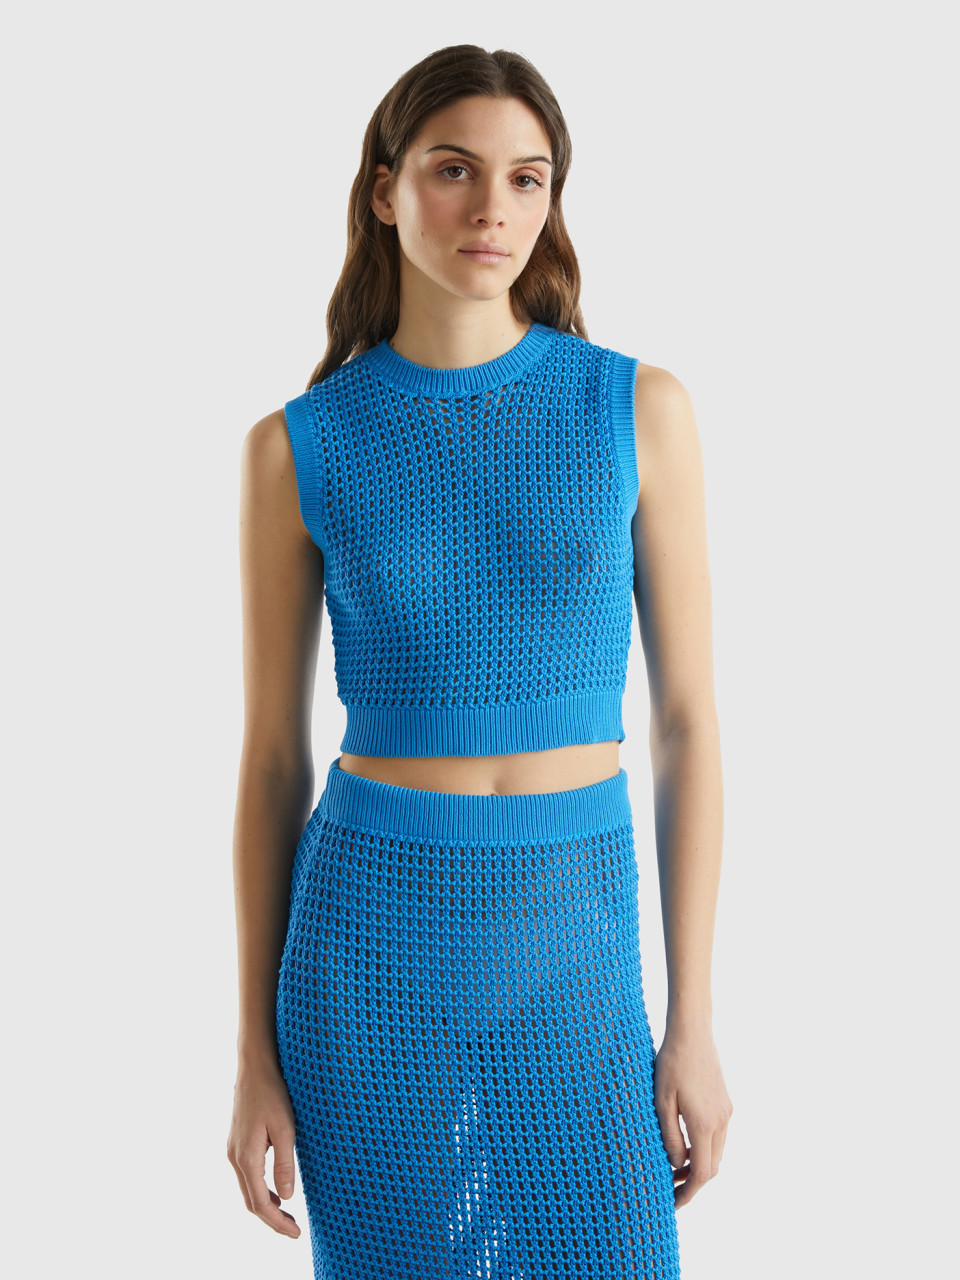 Benetton, Cropped Crochet Vest, Blue, Women